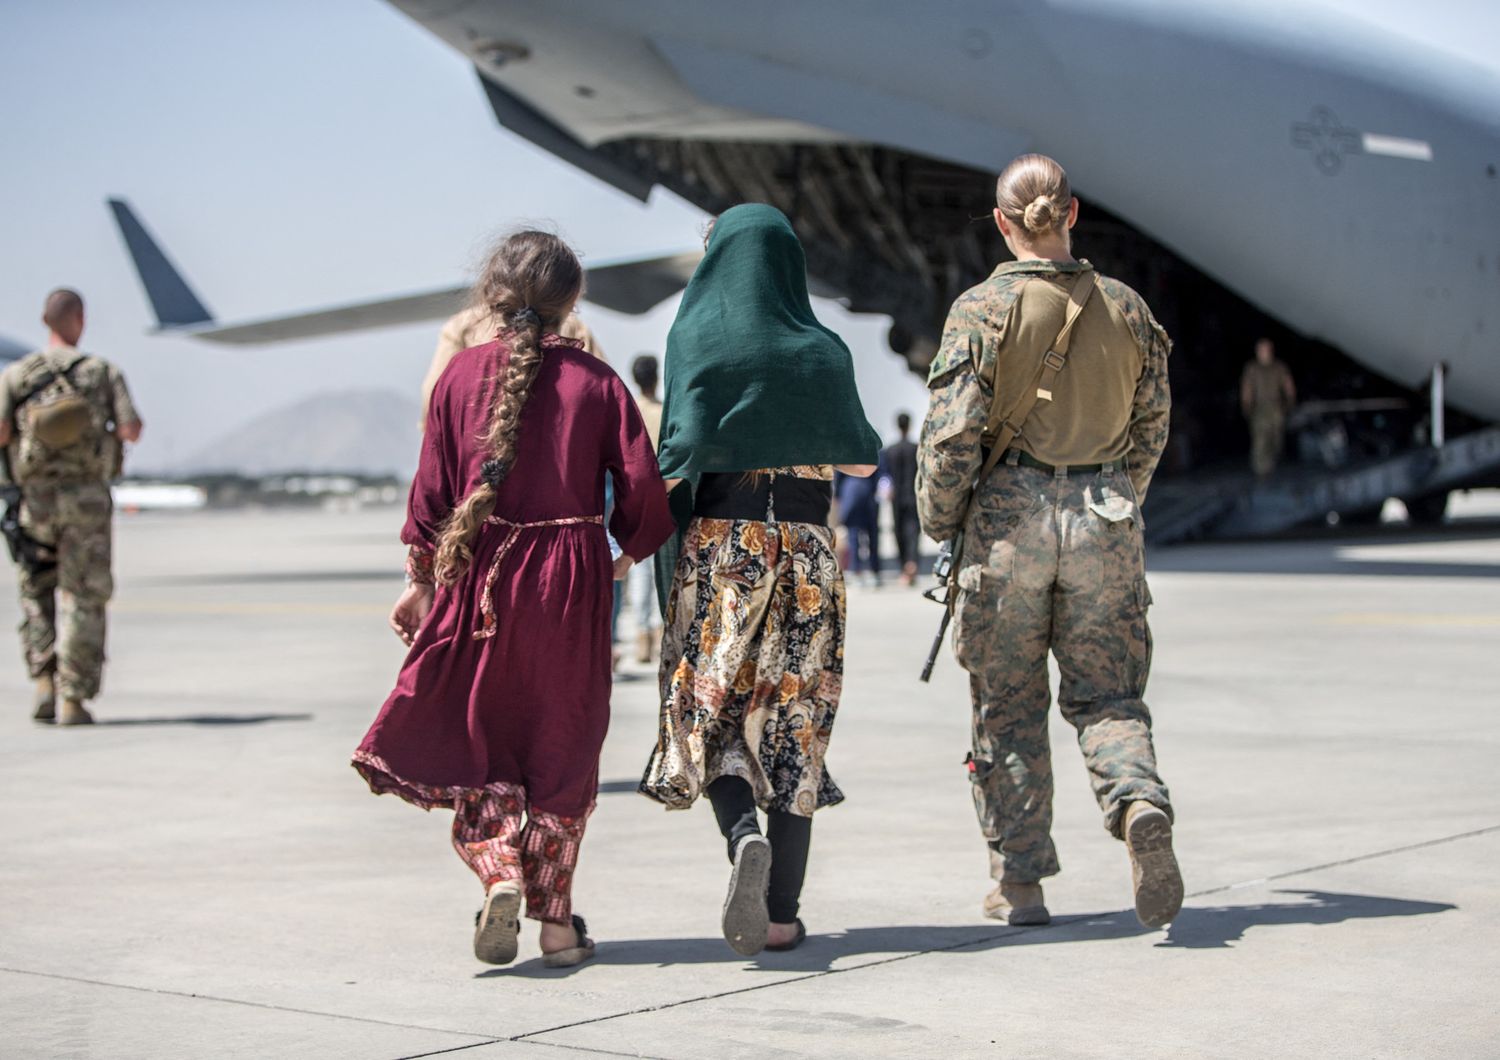 La marine Nicola Gee mentre scorta due donne afghane su un aereo nello scalo di Kabul